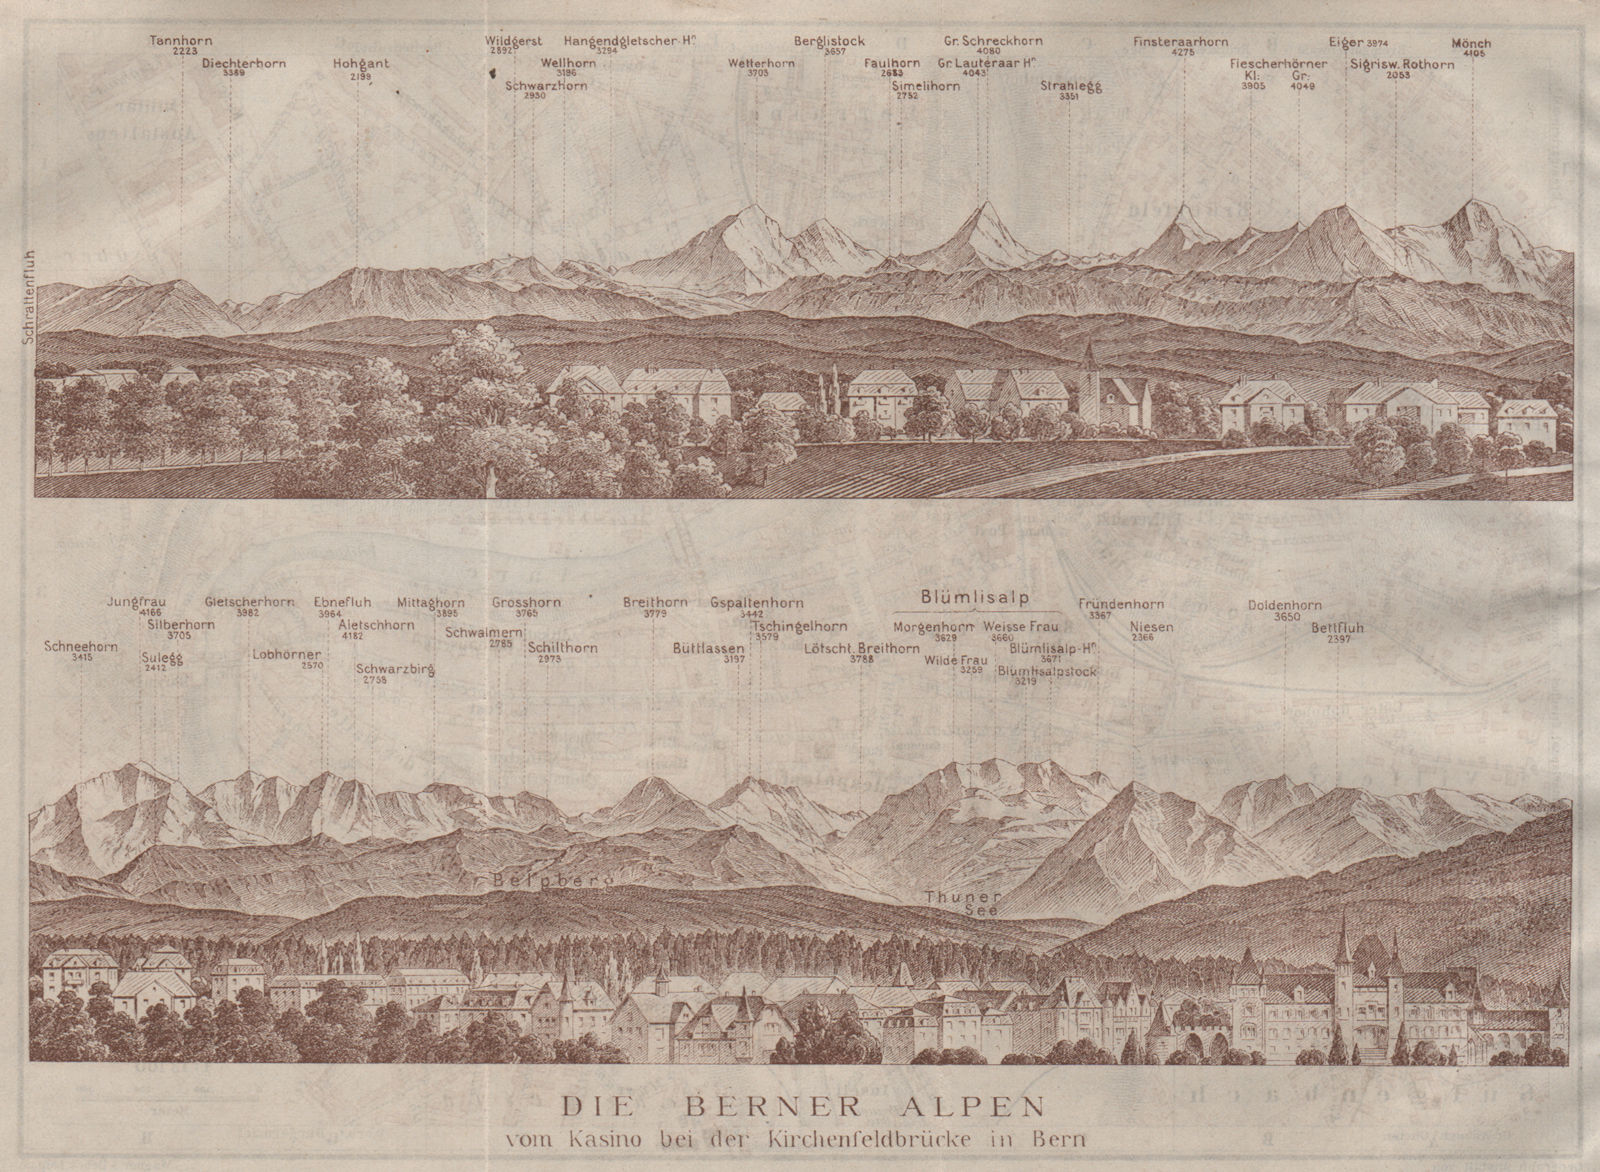 PANORAMA vom/from BERN/Berne. Blumisalp Eiger Jungfrau Gletscherhorn 1911 map